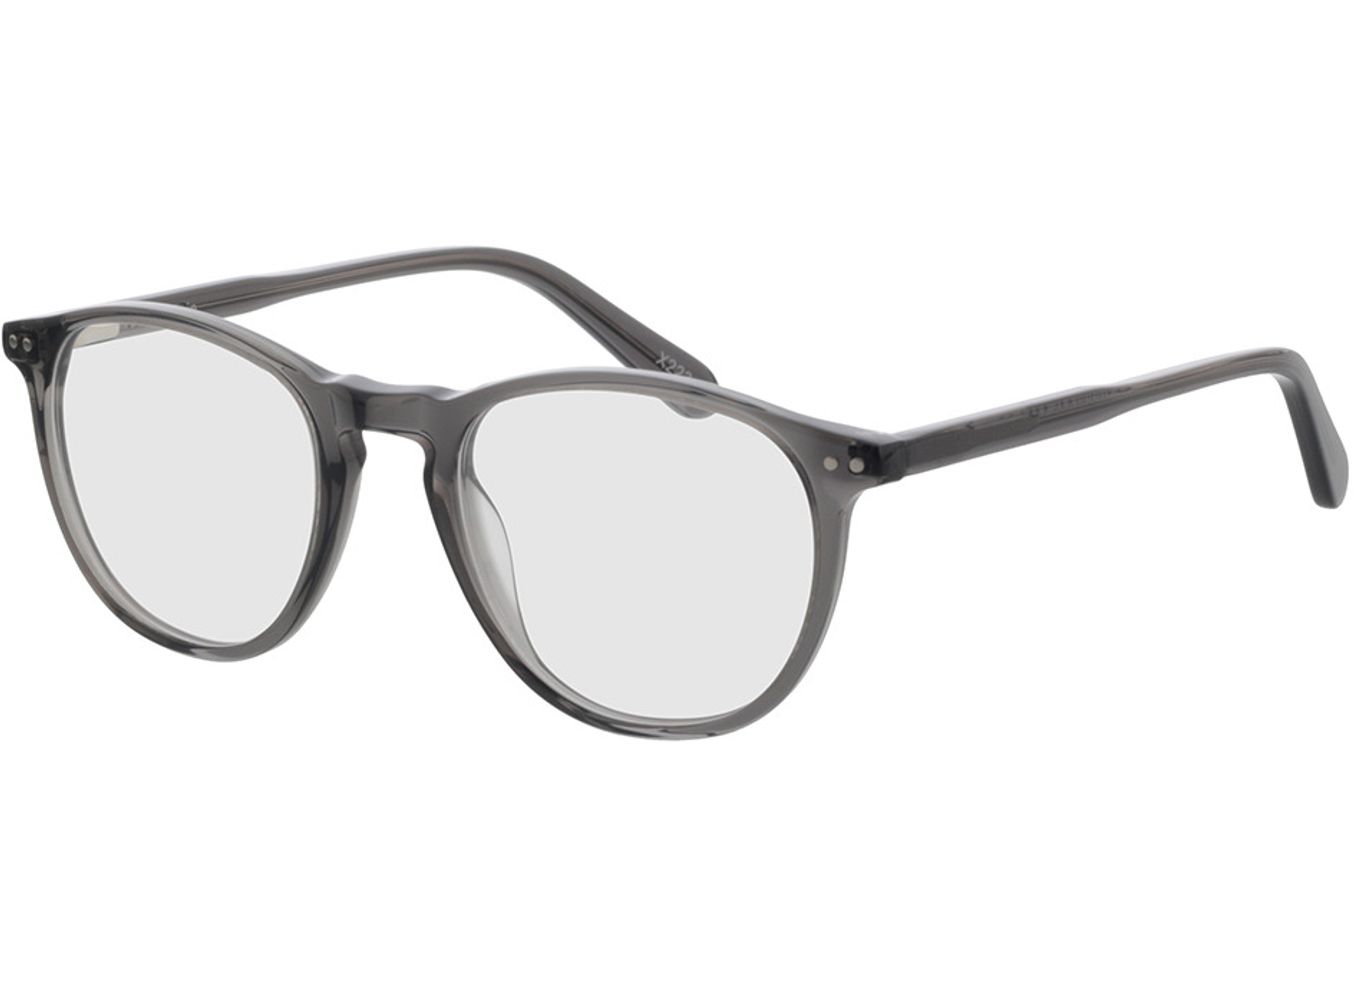 Alvin - grau Gleitsichtbrille, Vollrand, Rund von Brille24 Collection